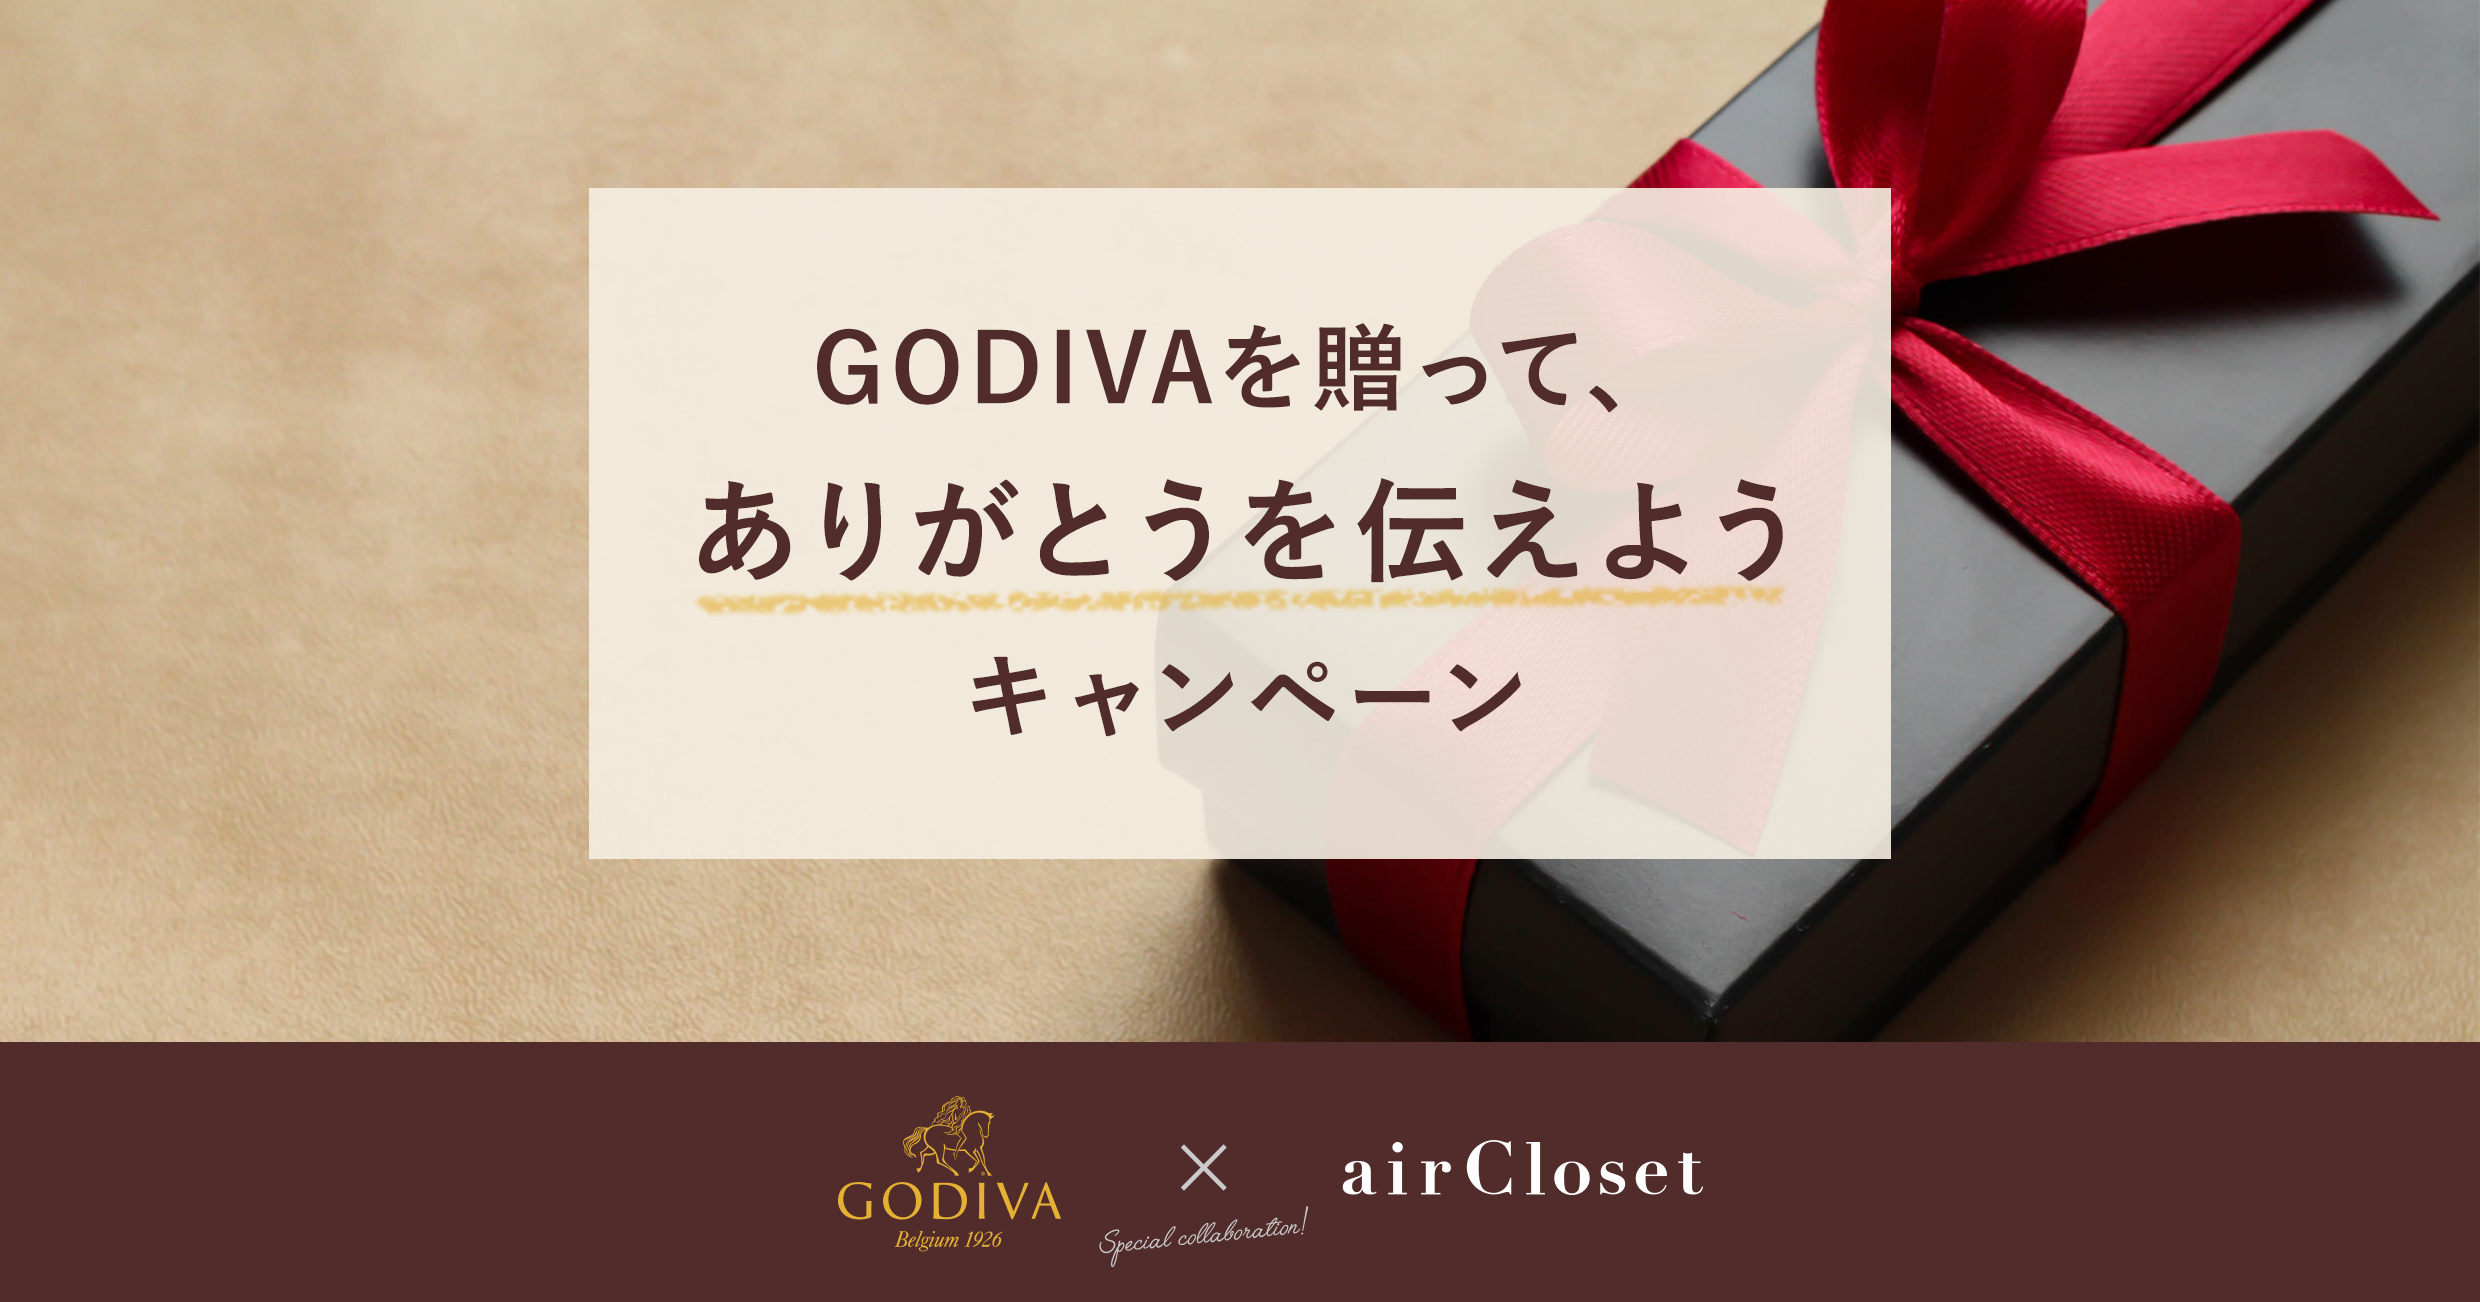 エアークローゼットとゴディバジャパンが異色のコラボ Godiva と ありがとう の気持ちつなぐ限定ギフトキャンペーンを実施 株式会社エアークローゼットのプレスリリース